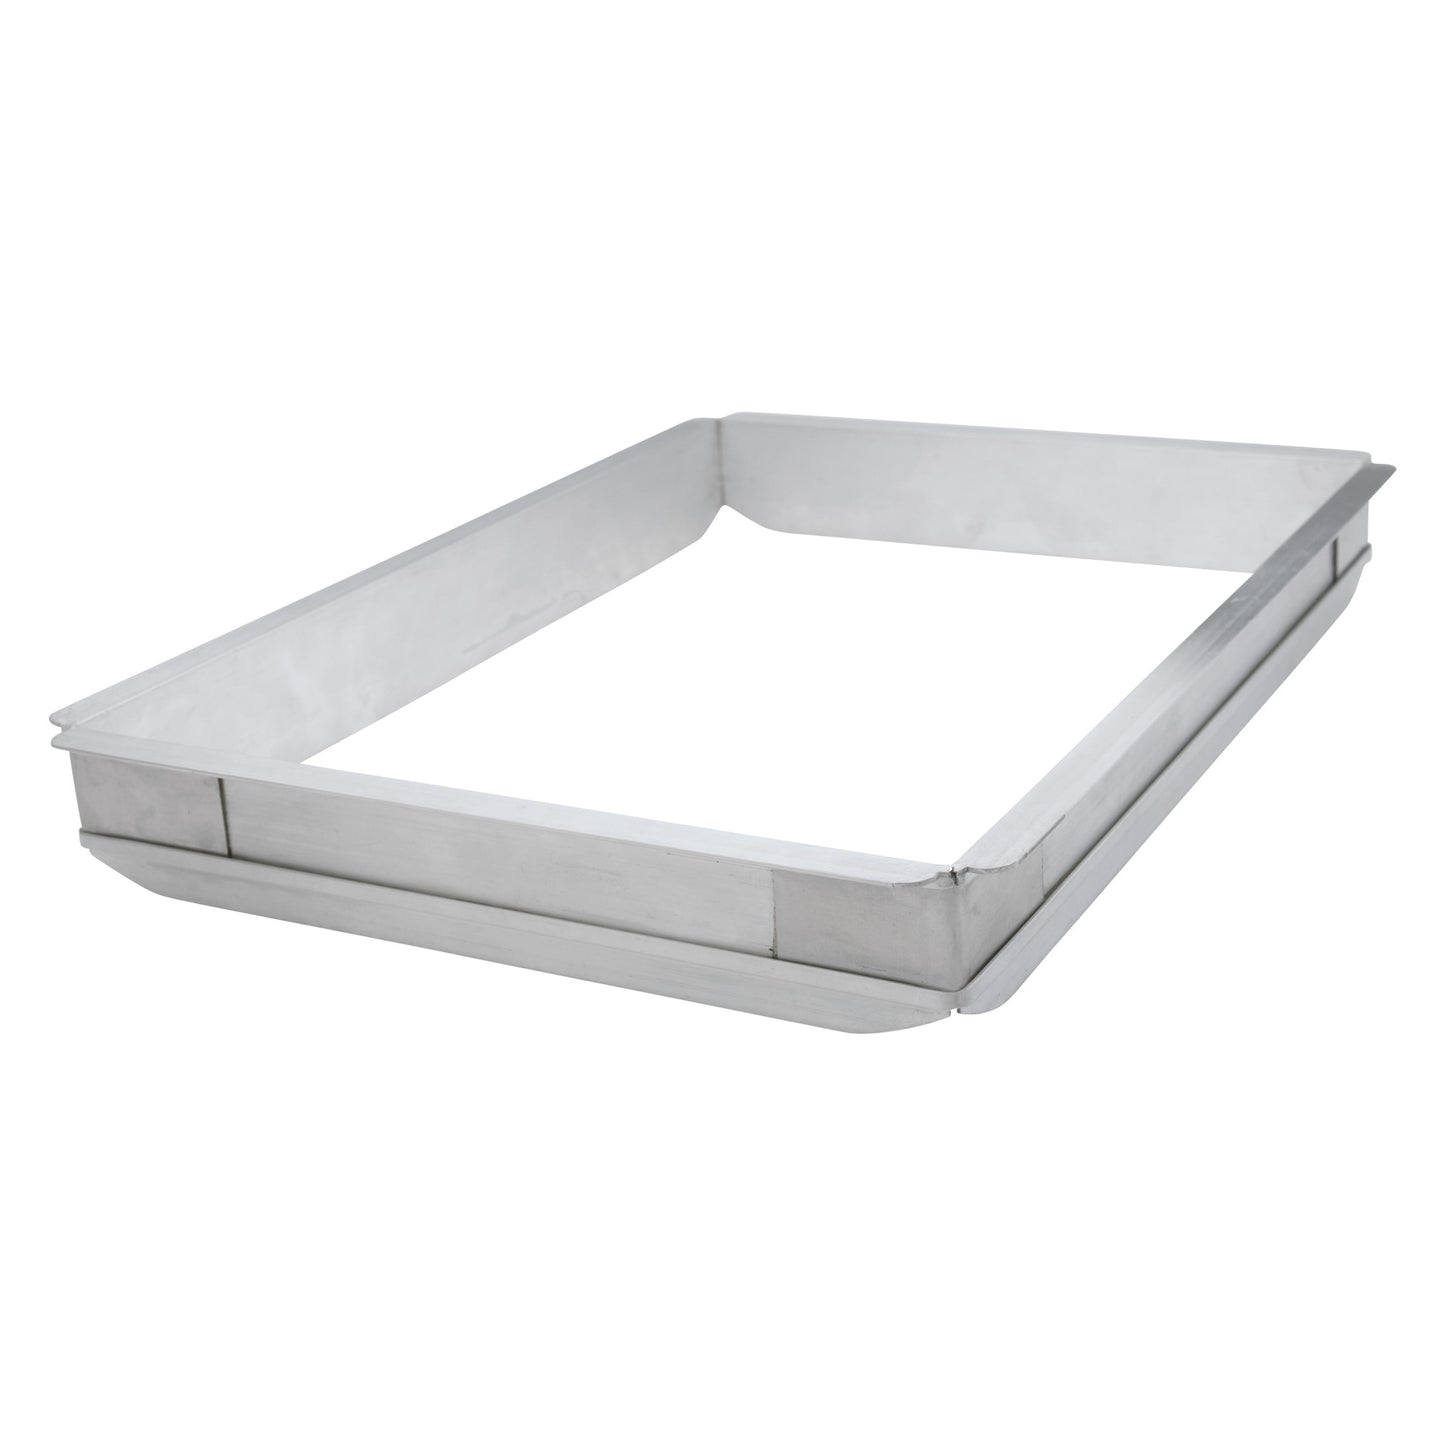 Aluminum Sheet Pan Extender - Full